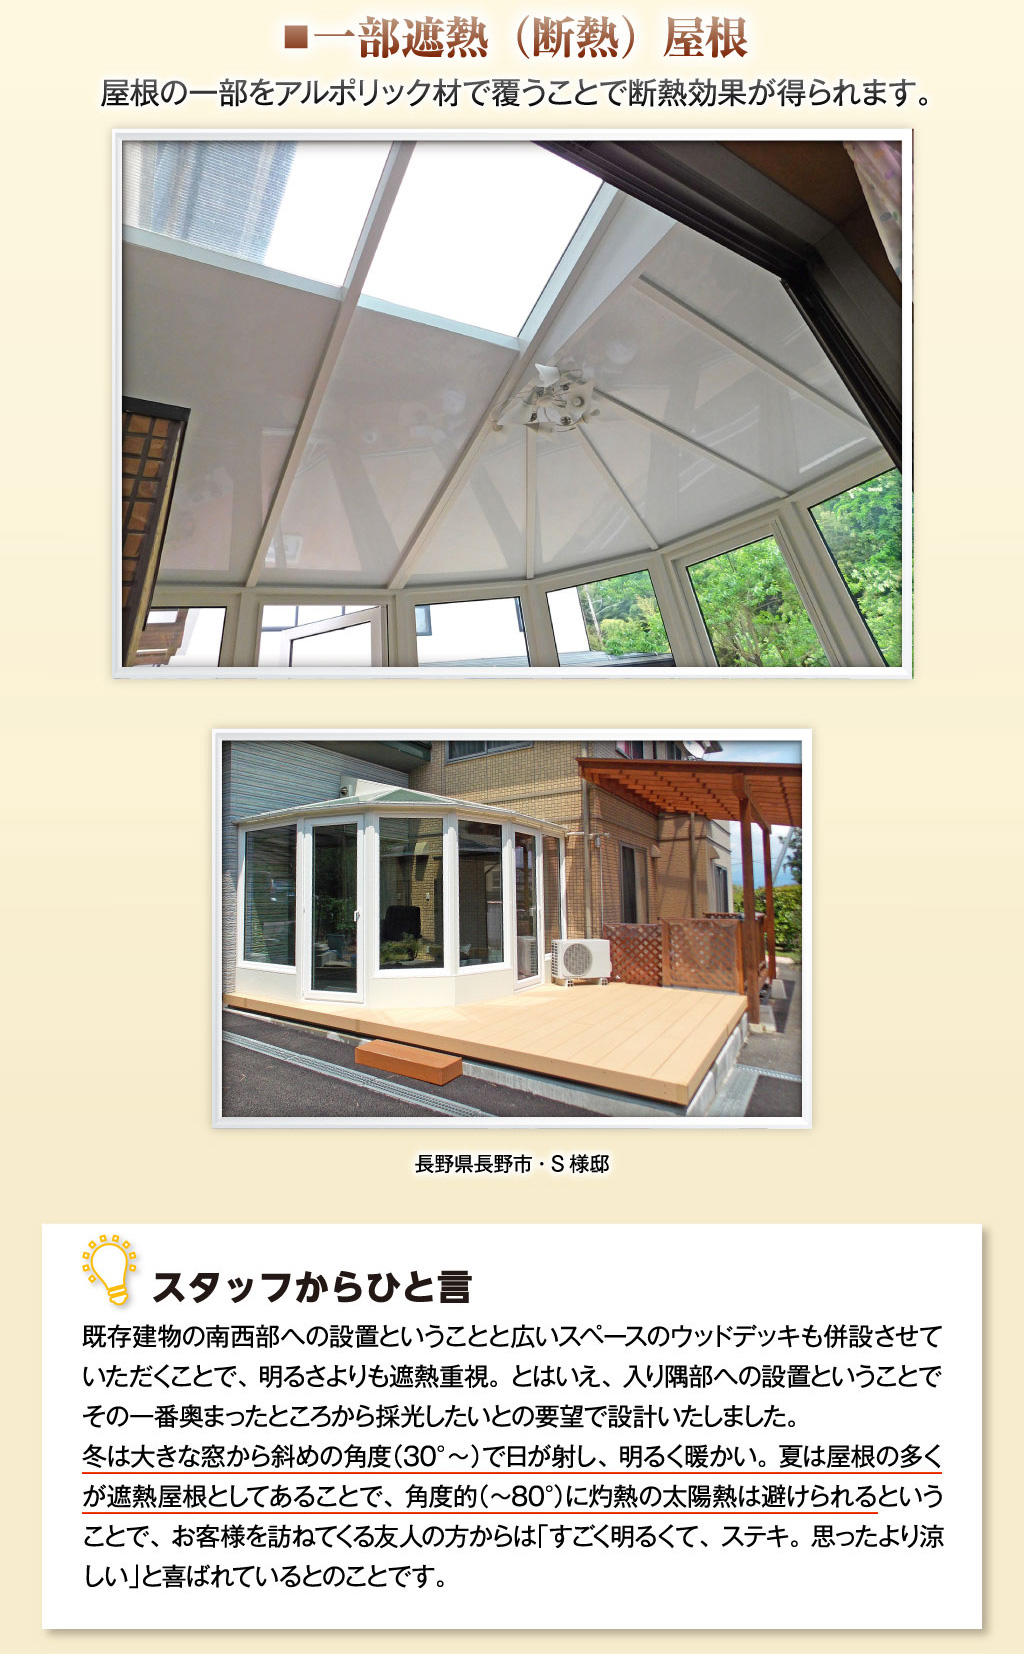 屋根の一部をアルポリック材で覆うことで断熱効果が得られます。